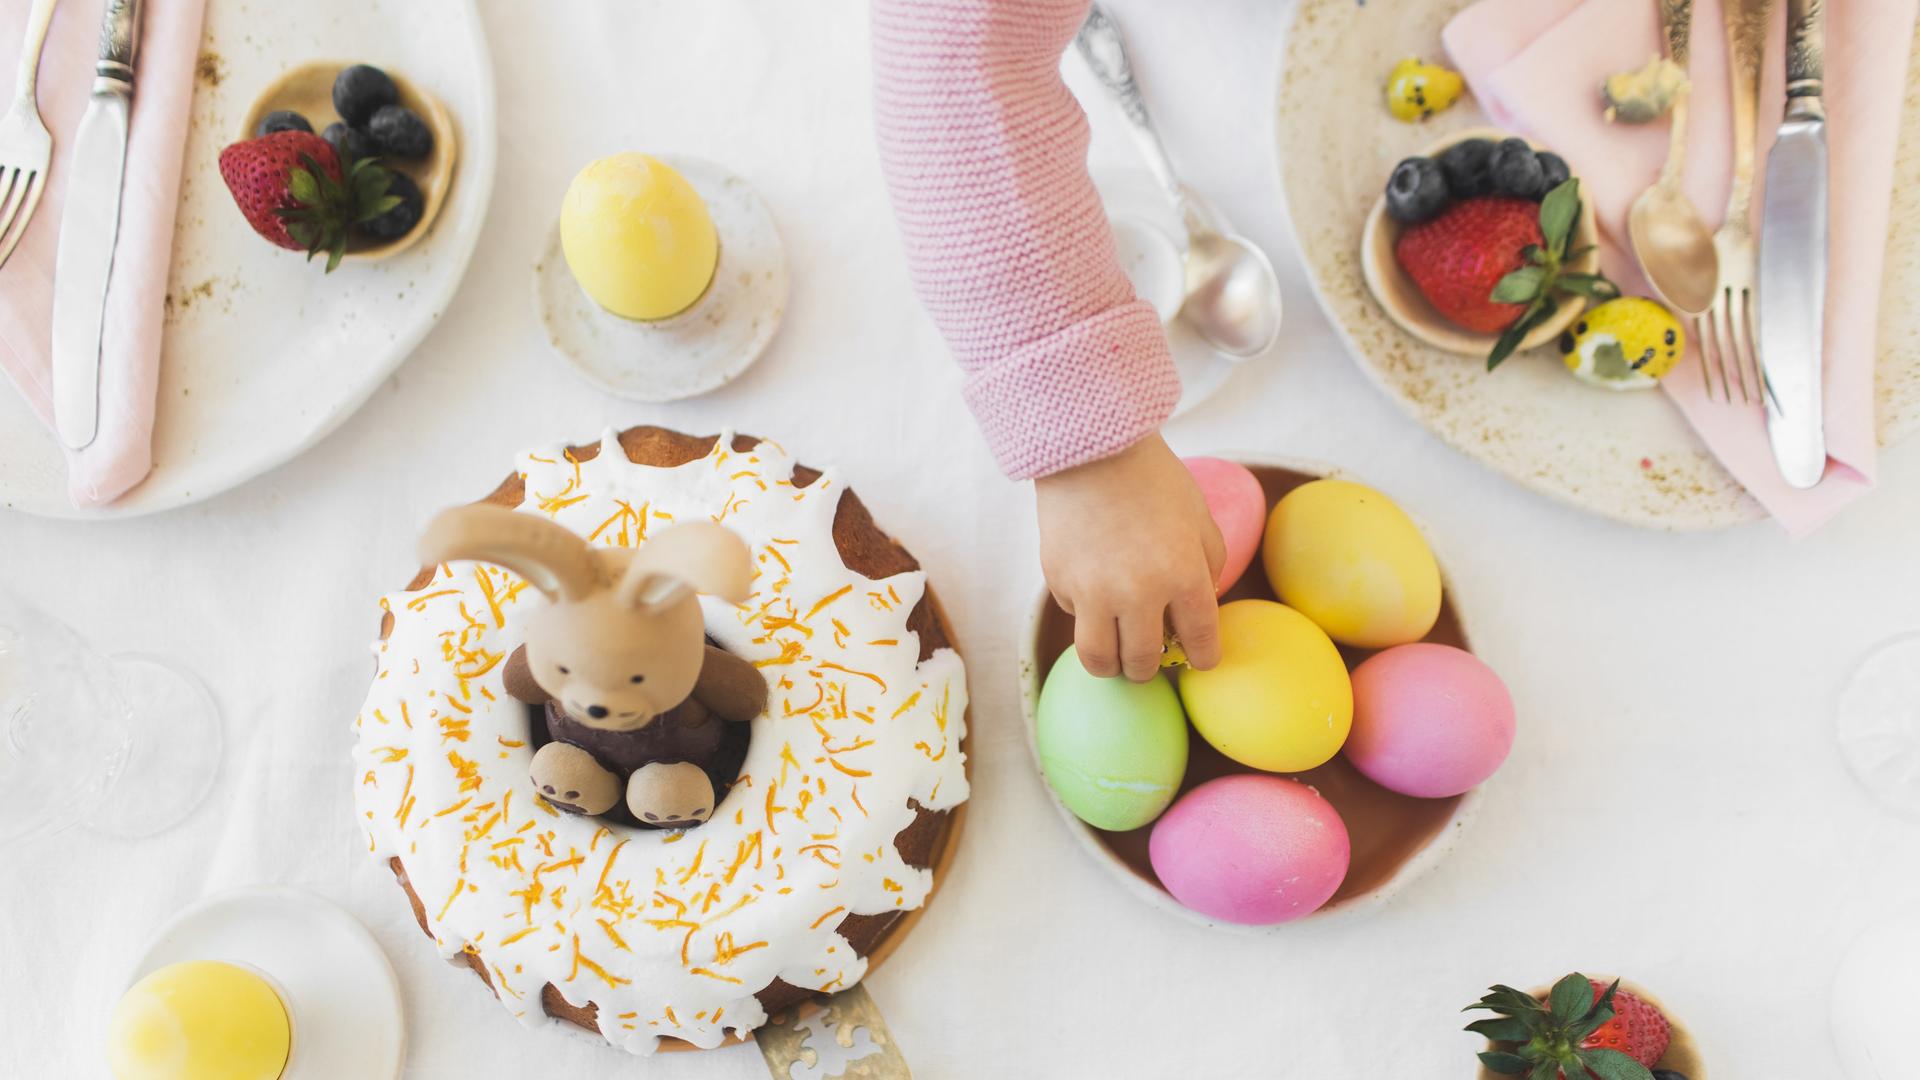 Ein für Ostern gedeckter und dekorierter Frühstückstisch. Eine kleine Kinderhand greift nach einem Ei.